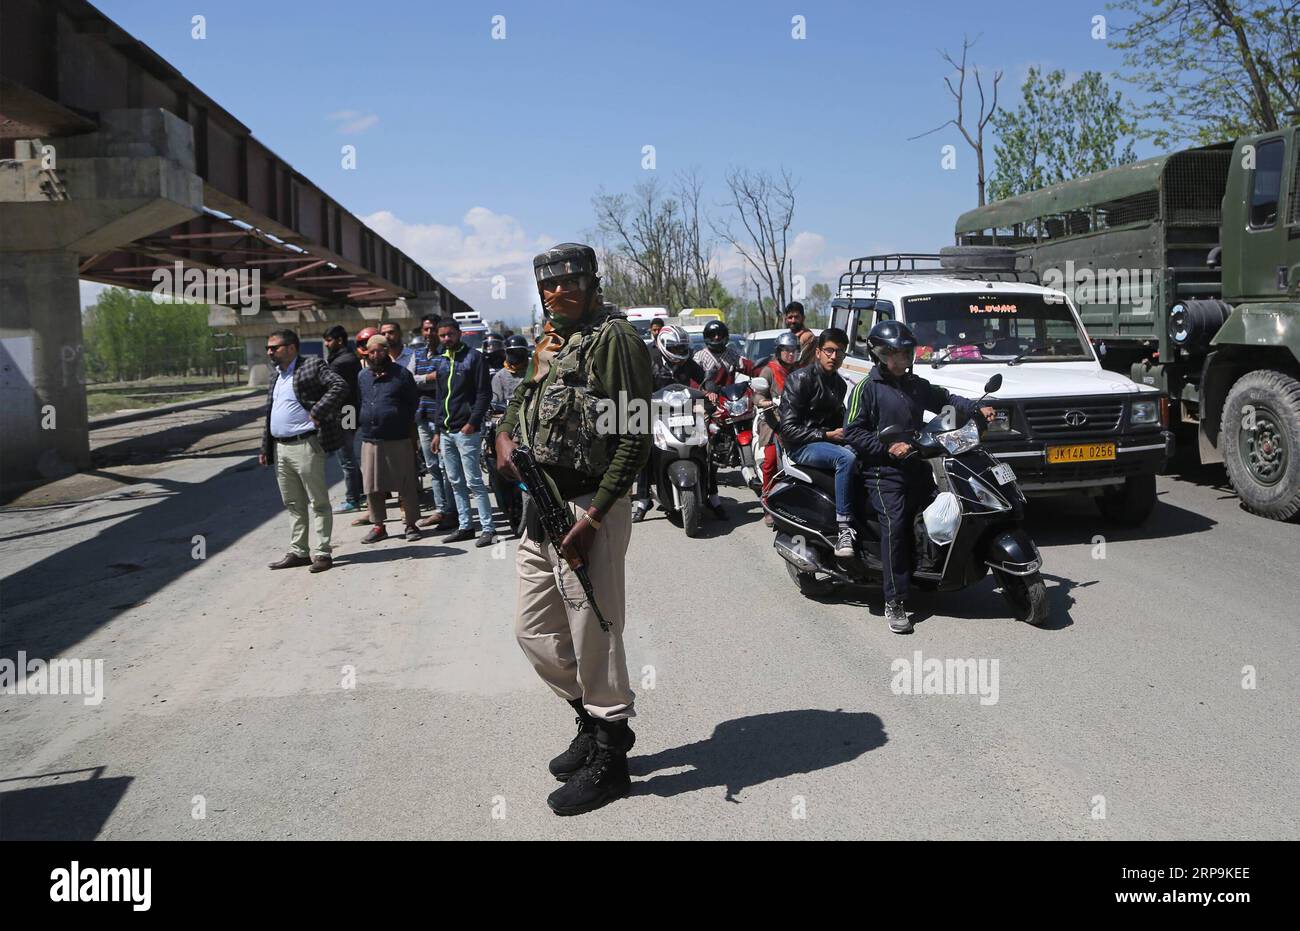 (190410) -- SRINAGAR, 10 avril 2019 (Xinhua) -- un soldat paramilitaire indien arrête la circulation civile pendant le confinement de sécurité sur une autoroute à la périphérie de la ville de Srinagar, capitale estivale du Cachemire contrôlé par l'Inde, 10 avril 2019. La circulation civile n'est pas autorisée sur l'autoroute dans le Cachemire contrôlé par l'Inde pendant deux jours par semaine (dimanche et mercredi) pendant les prochaines élections générales indiennes, ont déclaré les responsables. (Xinhua/Javed Dar) CACHEMIRE-SRINAGAR-CONFINEMENT DE SÉCURITÉ SUR LA ROUTE PUBLICATIONxNOTxINxCHN Banque D'Images